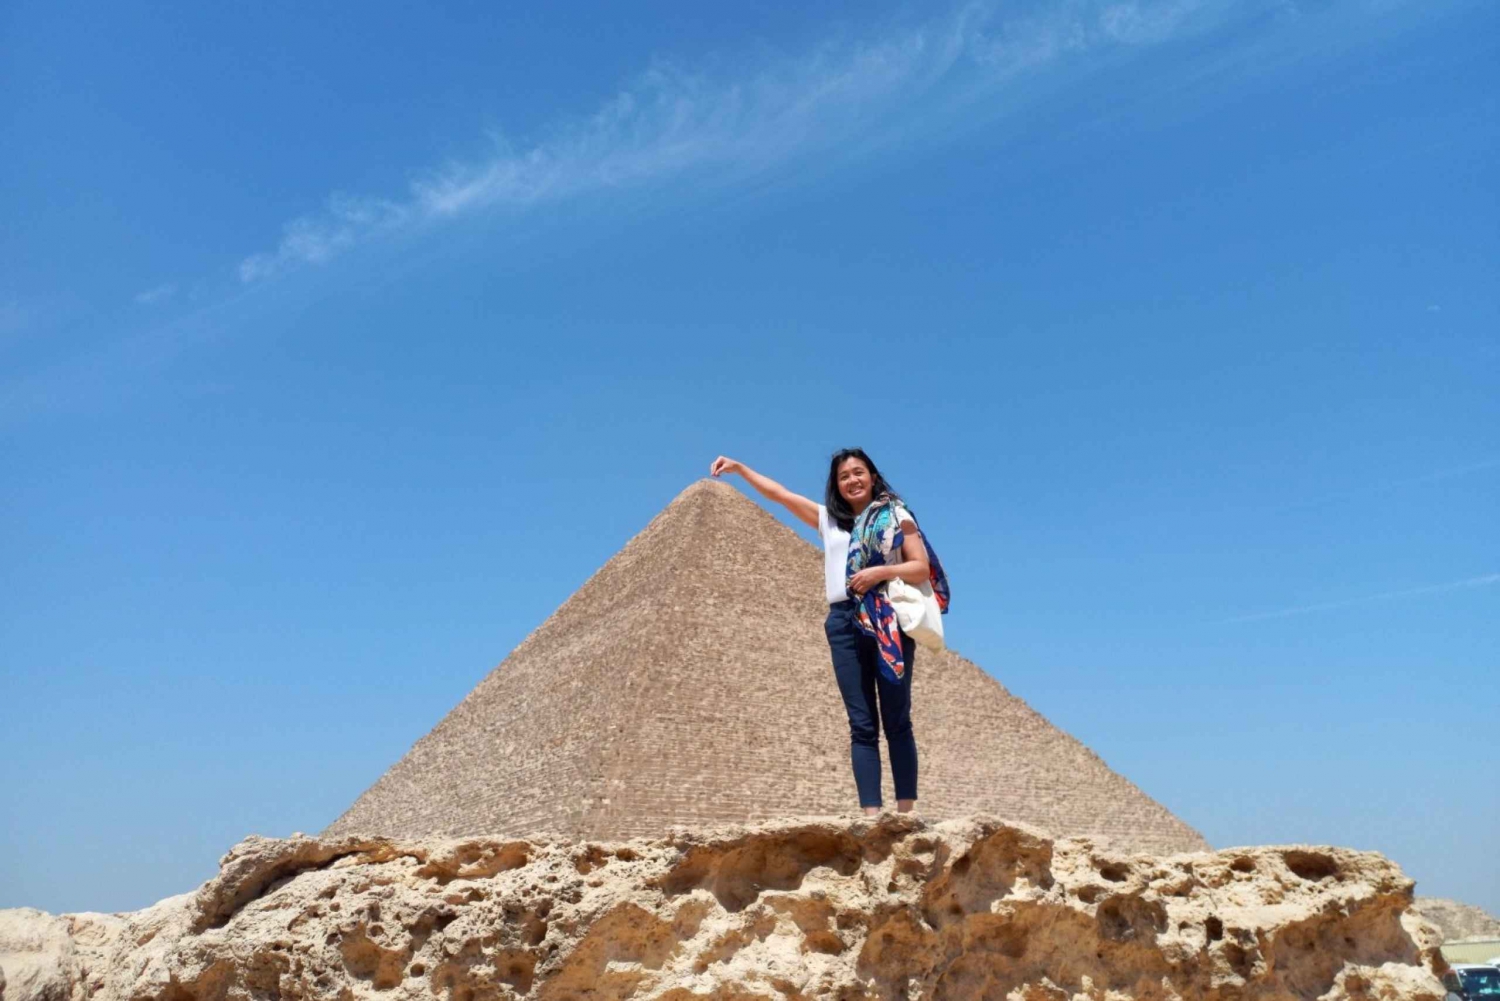 Kairosta/Gizasta: Sakkara, Memphis ja Gizan pyramidit päiväretki